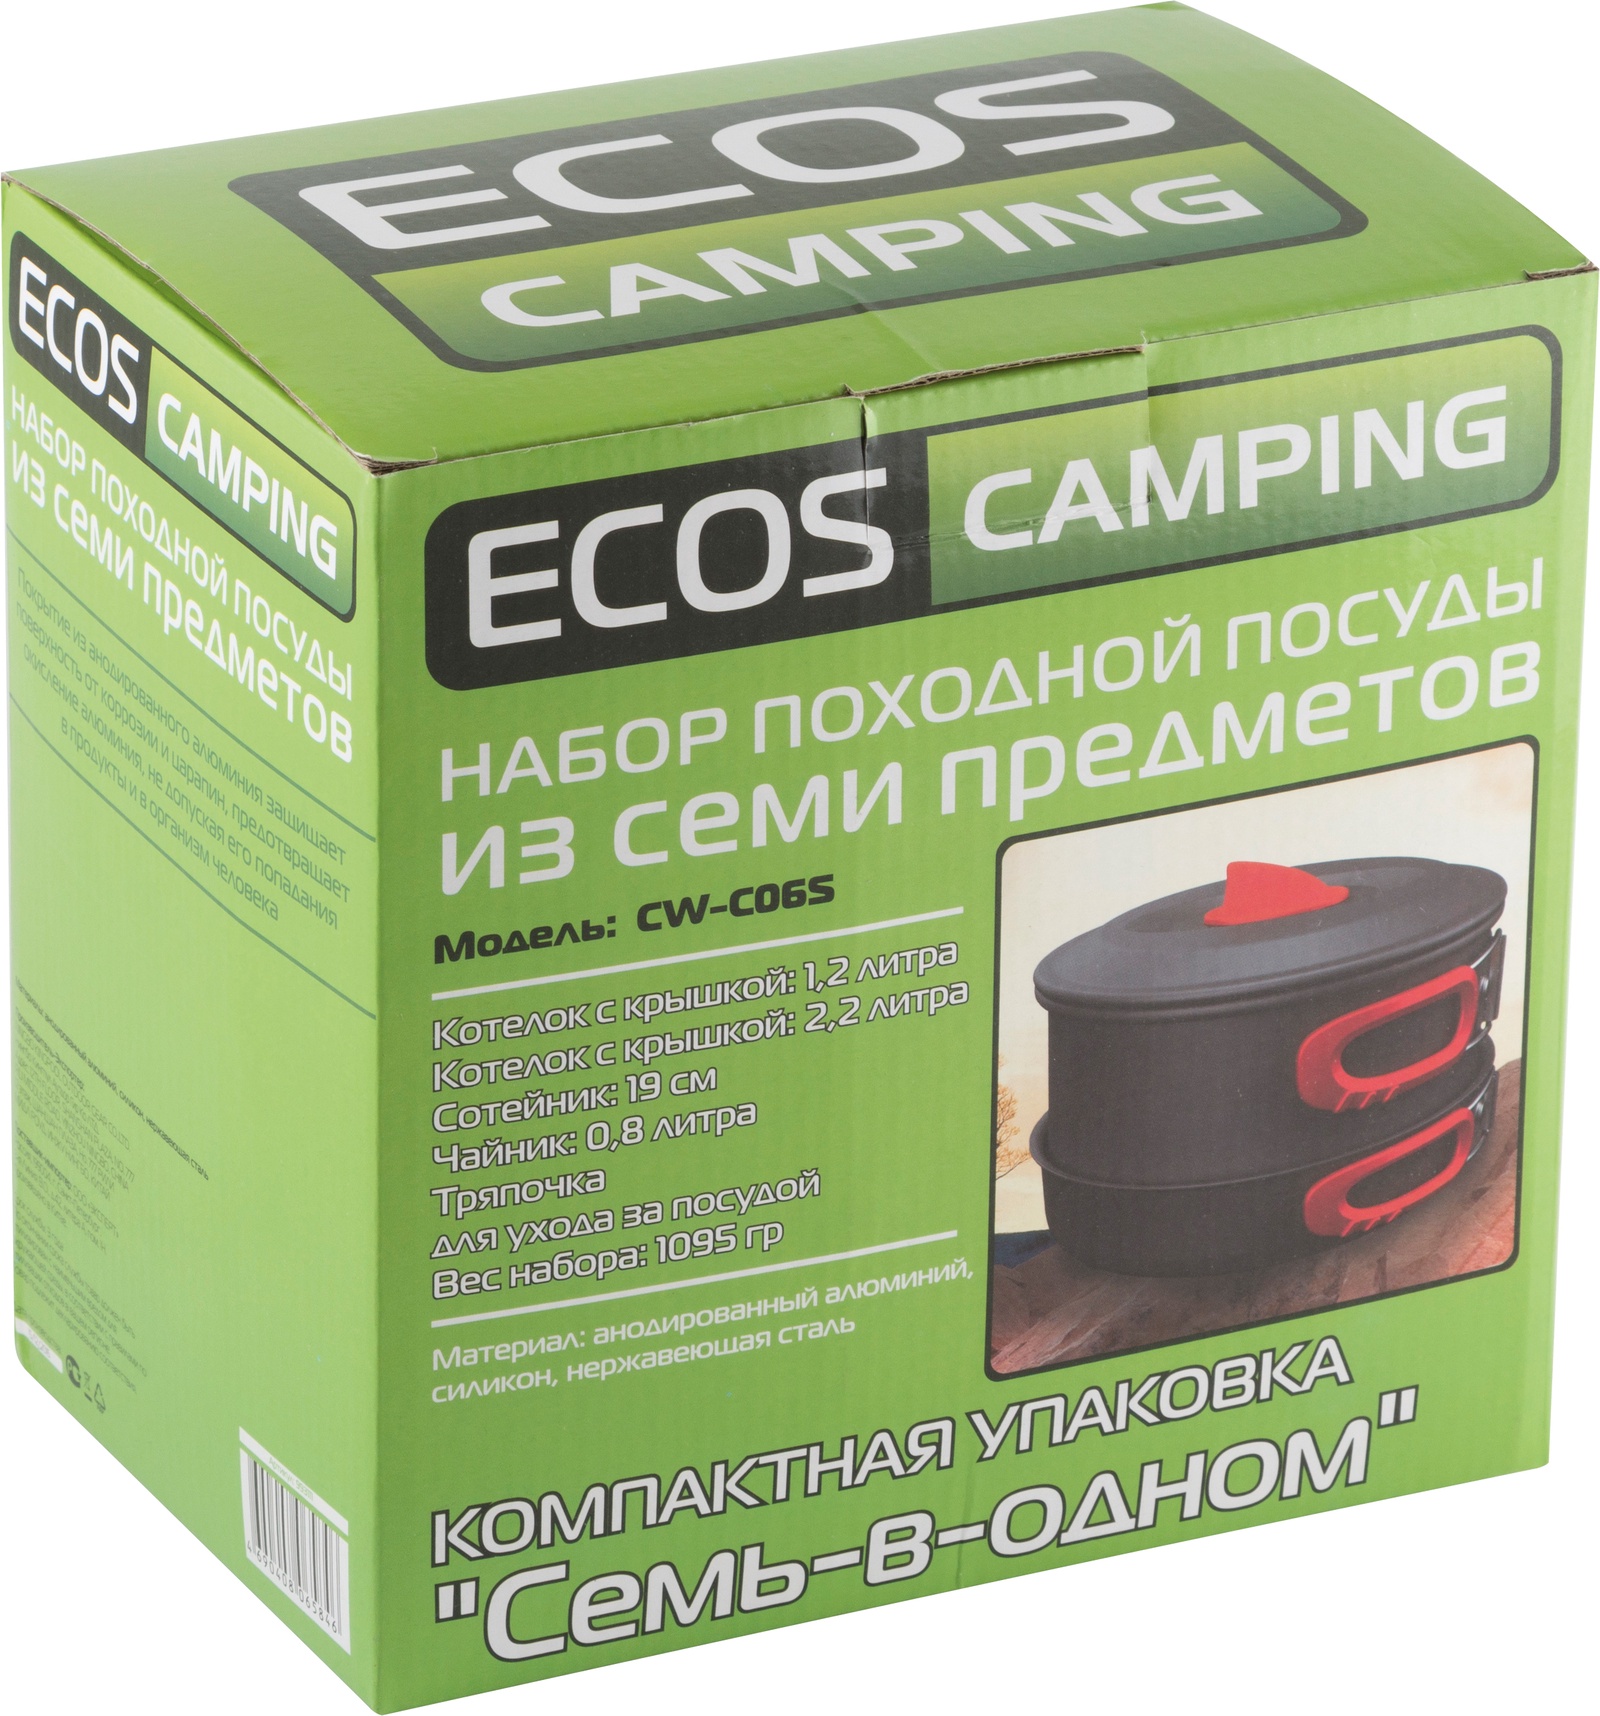 Набор туристической посуды Ecos cw008, 7 шт.. Кружка Ecos Camping. Ecos Camping посуда. Ecos модификация оборудования. Ecos camping